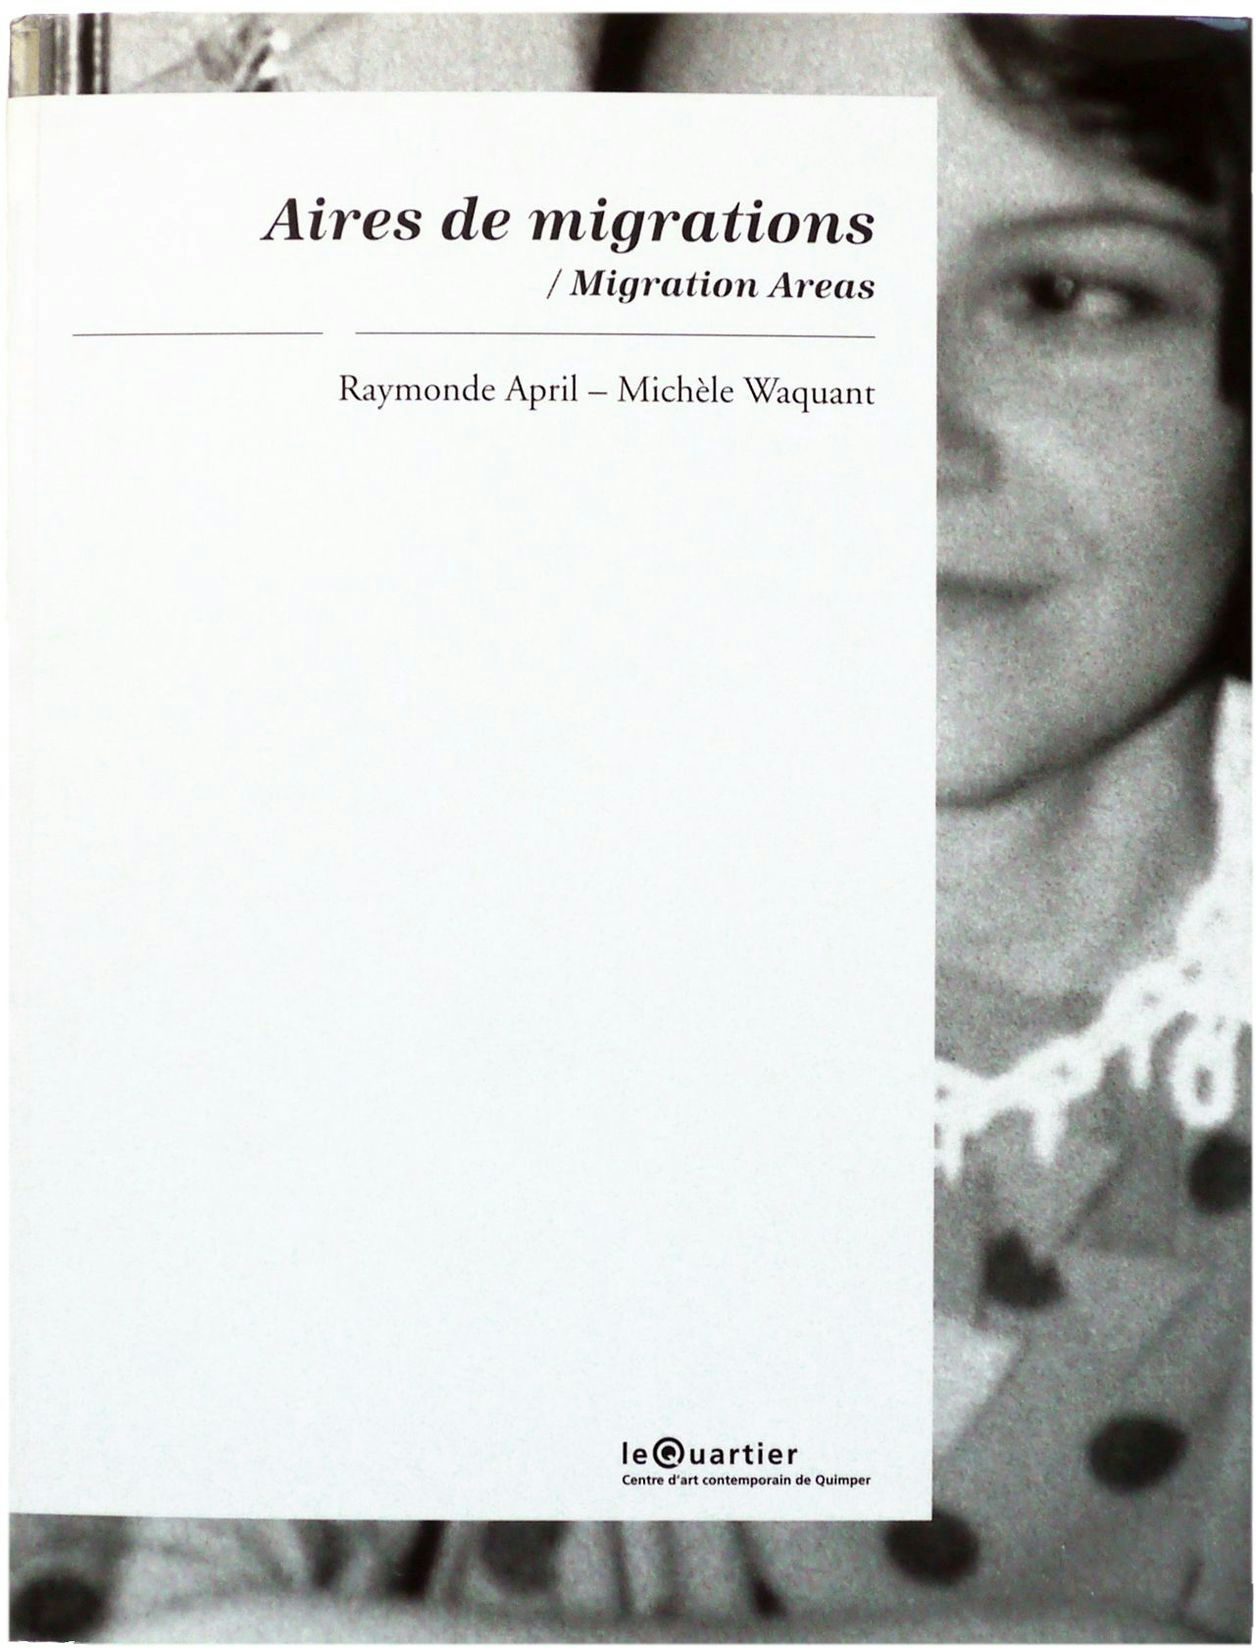 Image de la publication Aires de migrations. Raymonde April – Michèle Waquant publiée par VOX